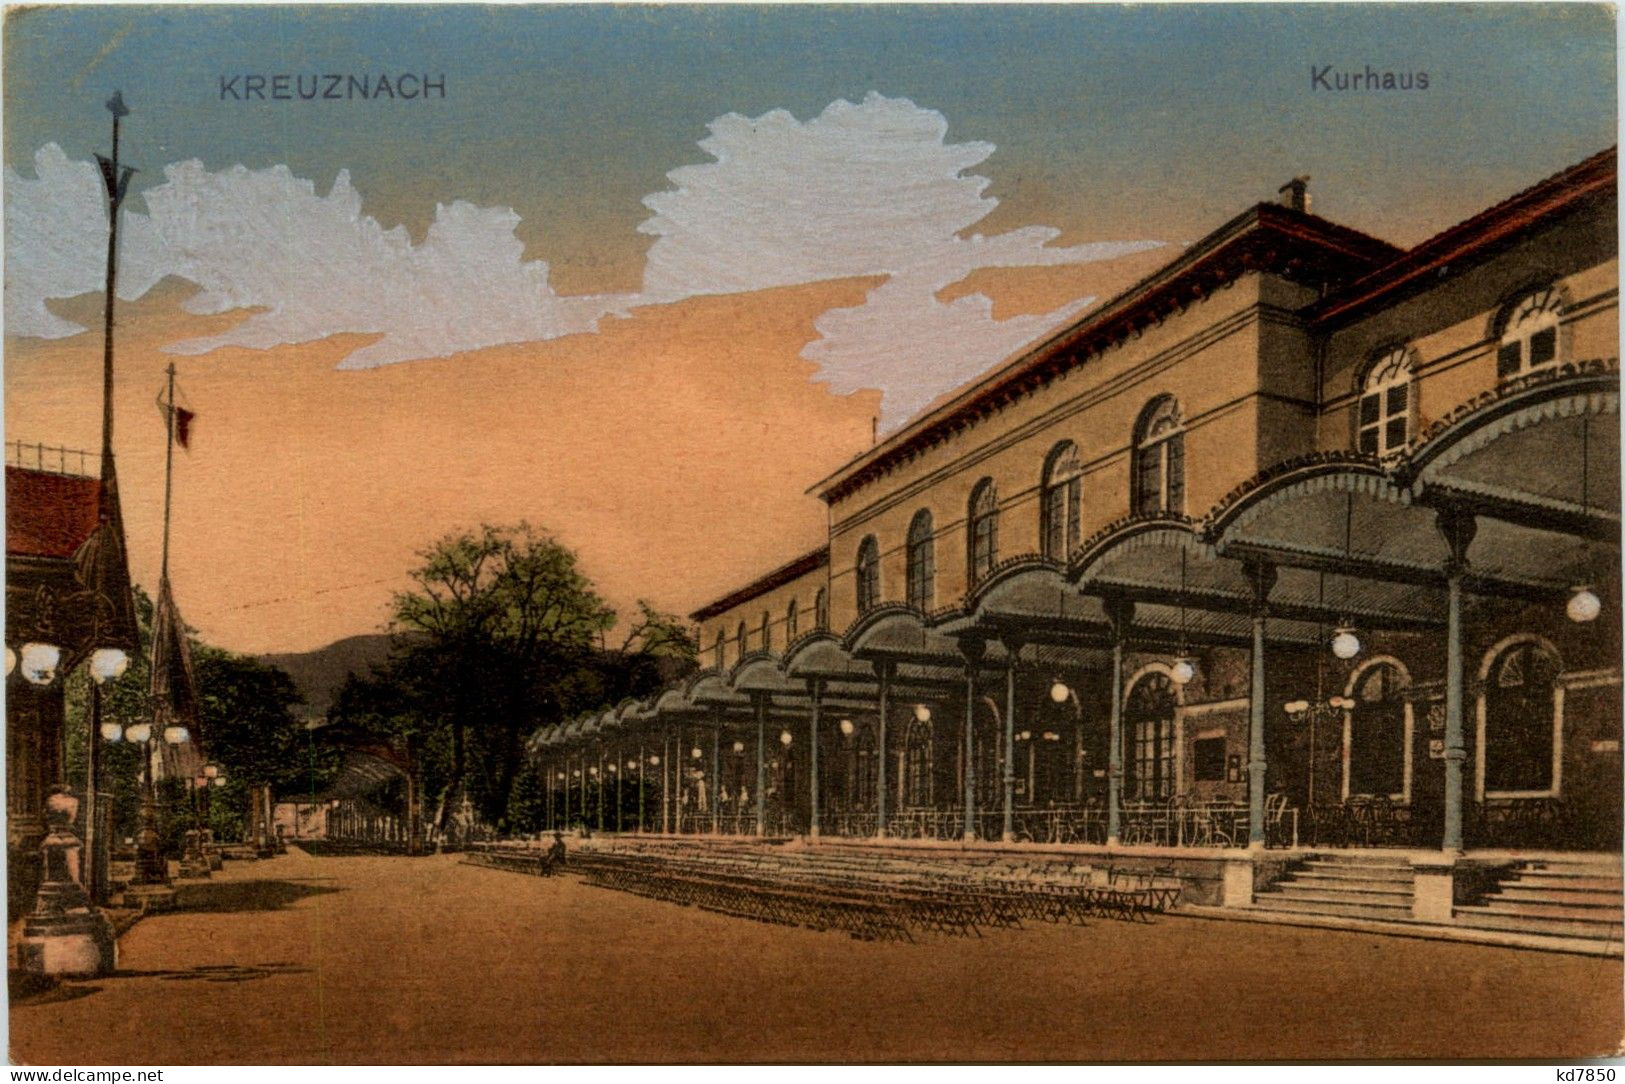 Kreuznach - Kurhaus - Bad Kreuznach